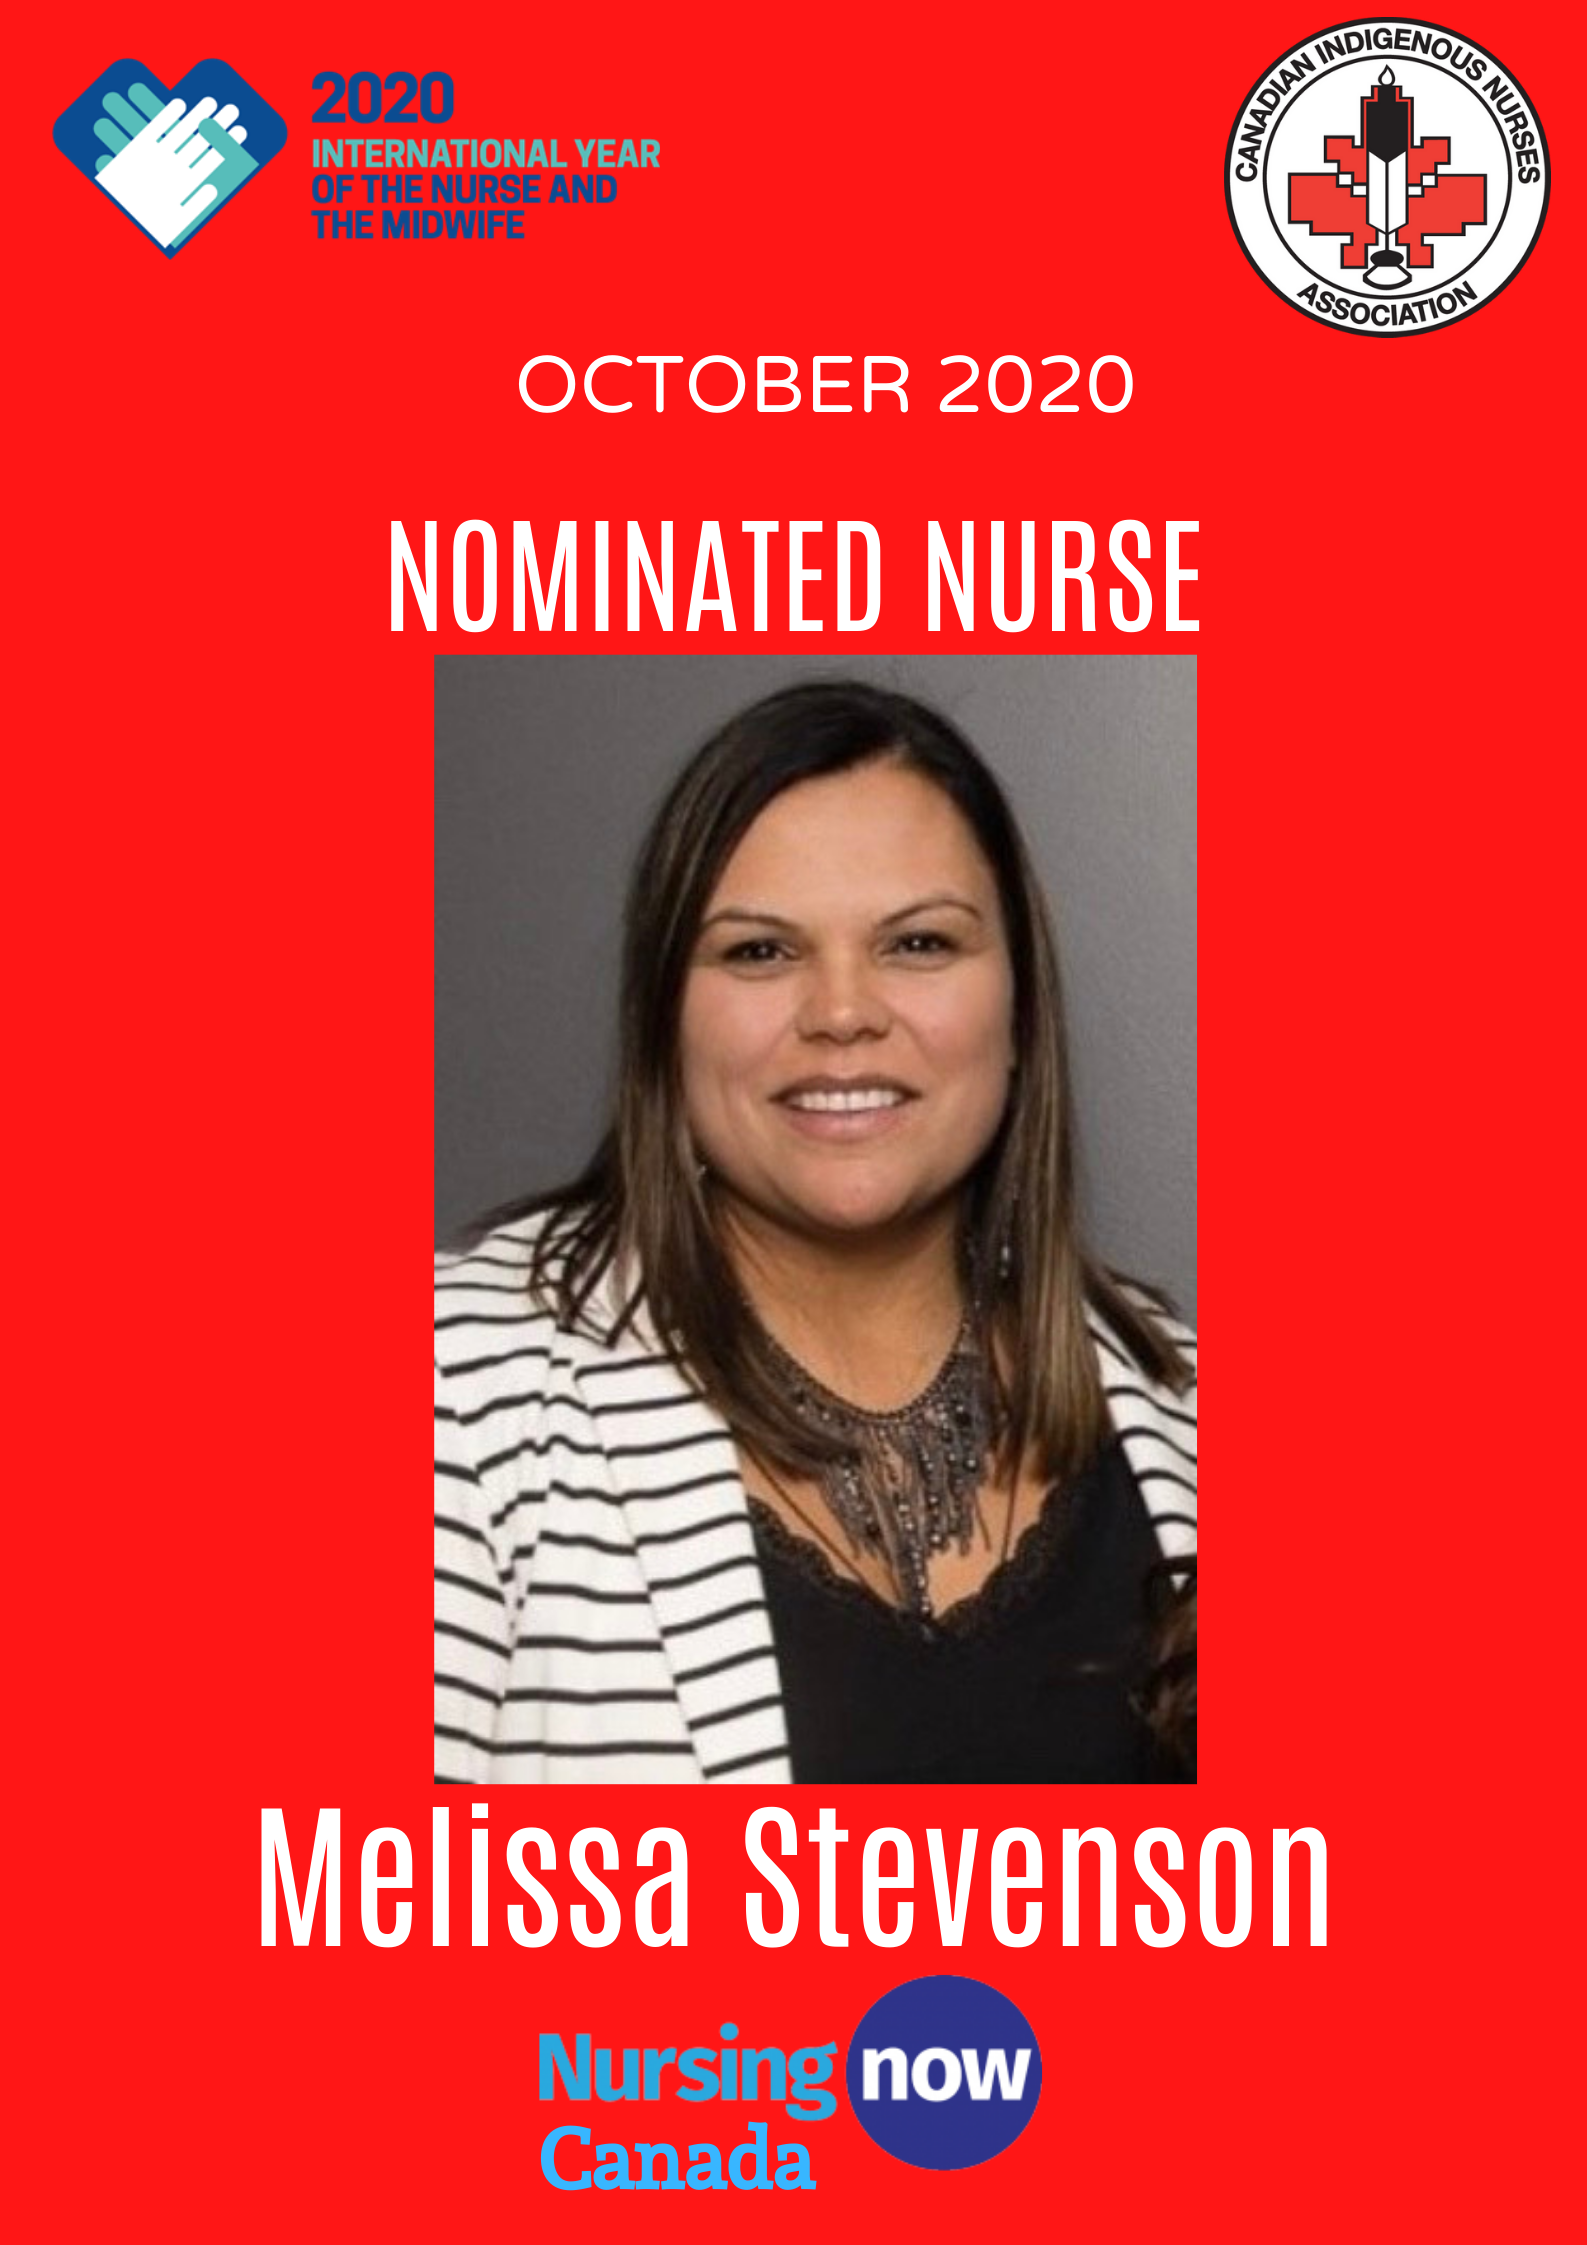 October Nominated Nurse Melissa Stevenson